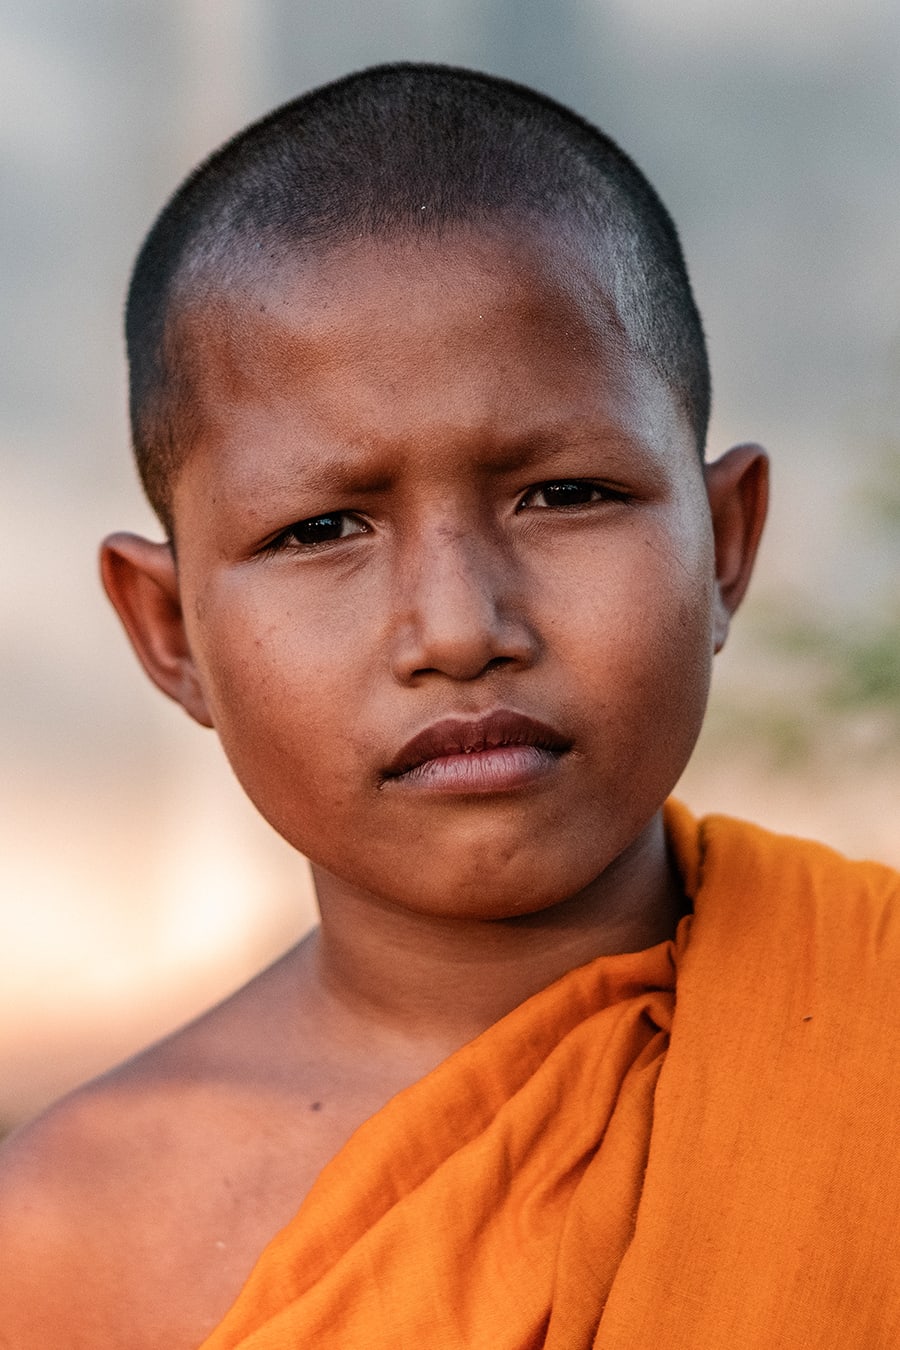 Novice monk in Siem Reap, Cambodia.